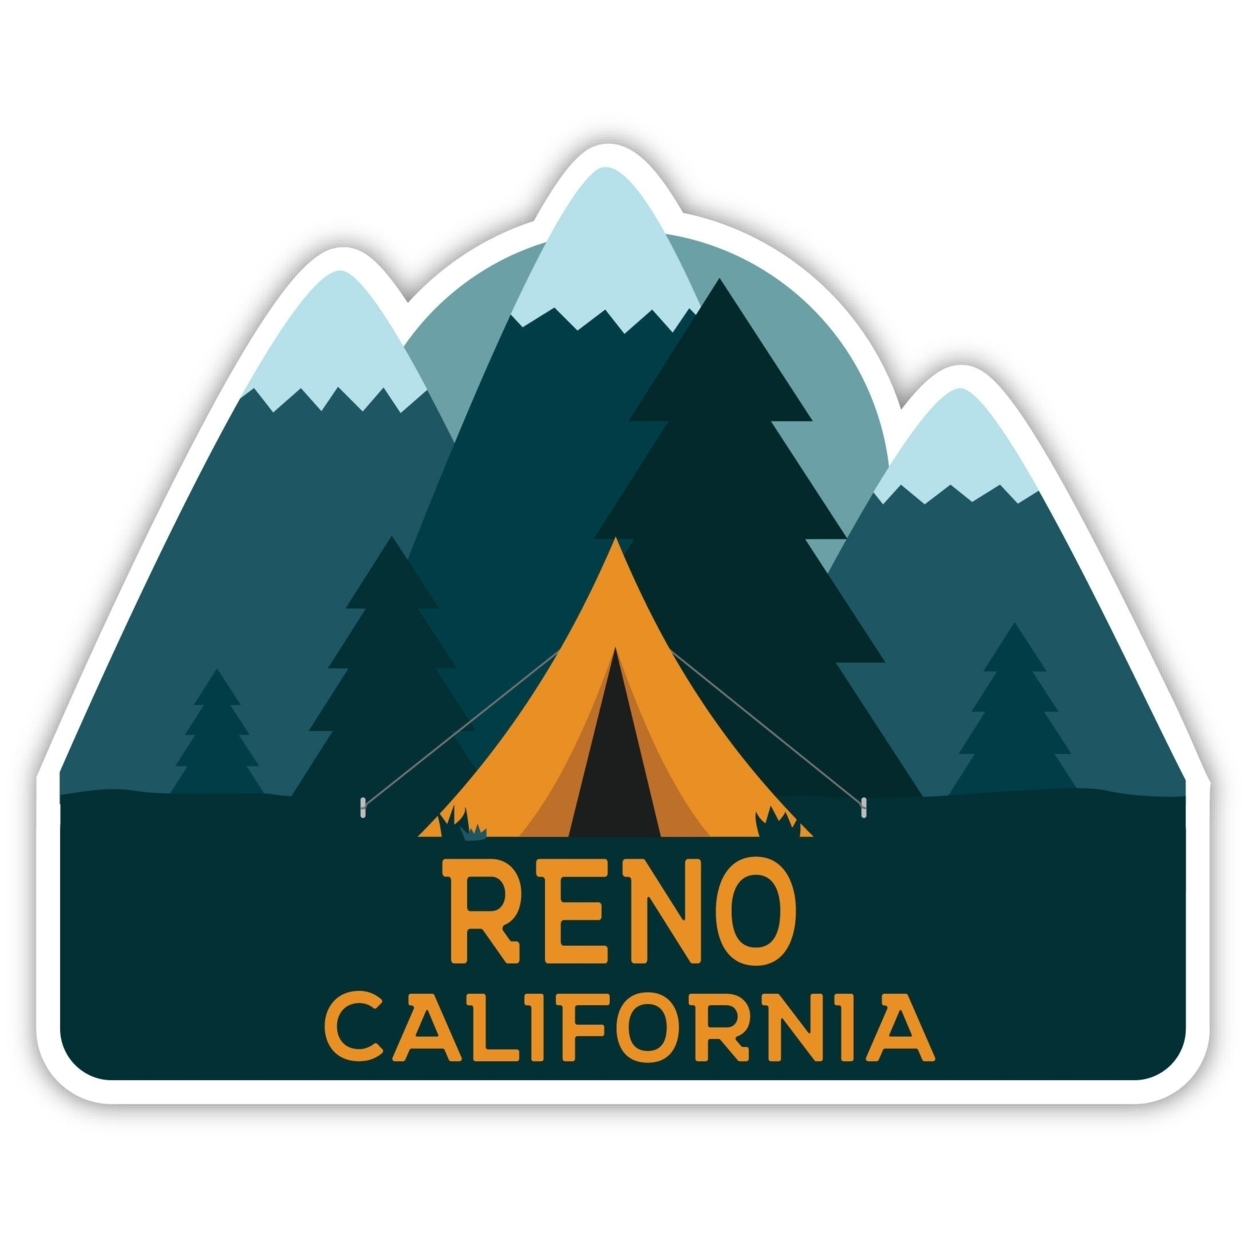 Reno California Souvenir Decorative Stickers (Choose Theme And Size) - Single Unit, 2-Inch, Tent